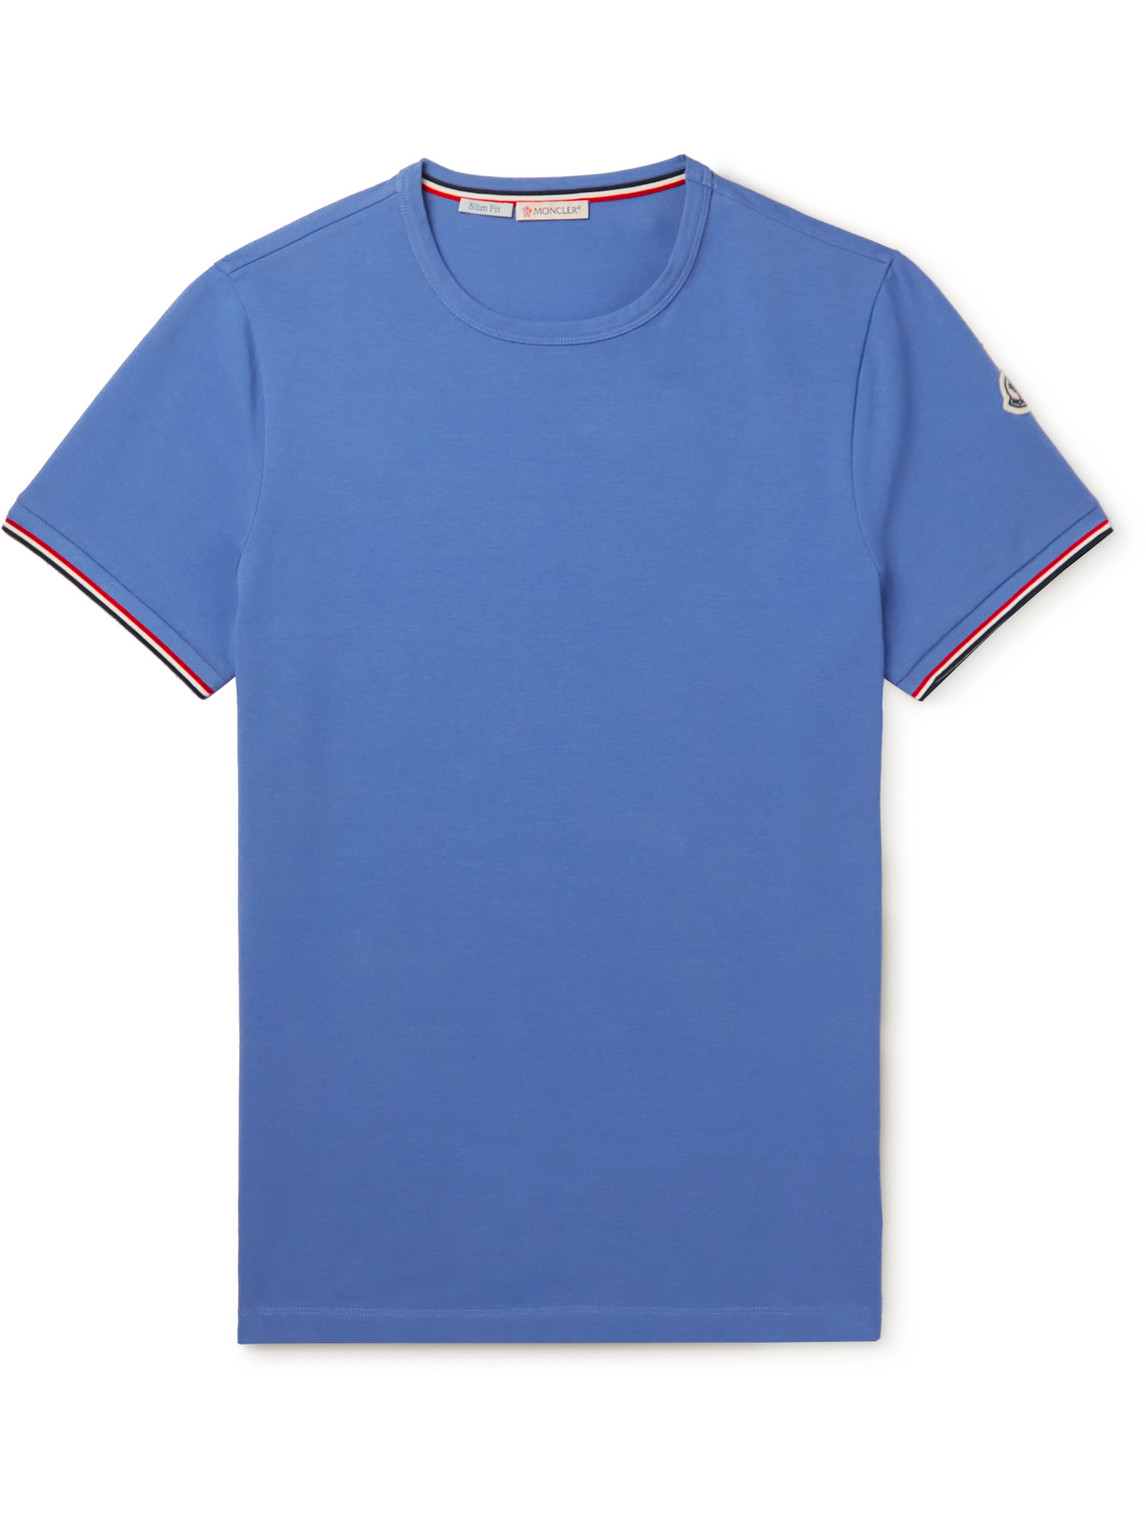 Moncler - Slim-Fit Logo-Appliquéd Stretch-Cotton Jersey T-Shirt - Men - Blue - L von Moncler